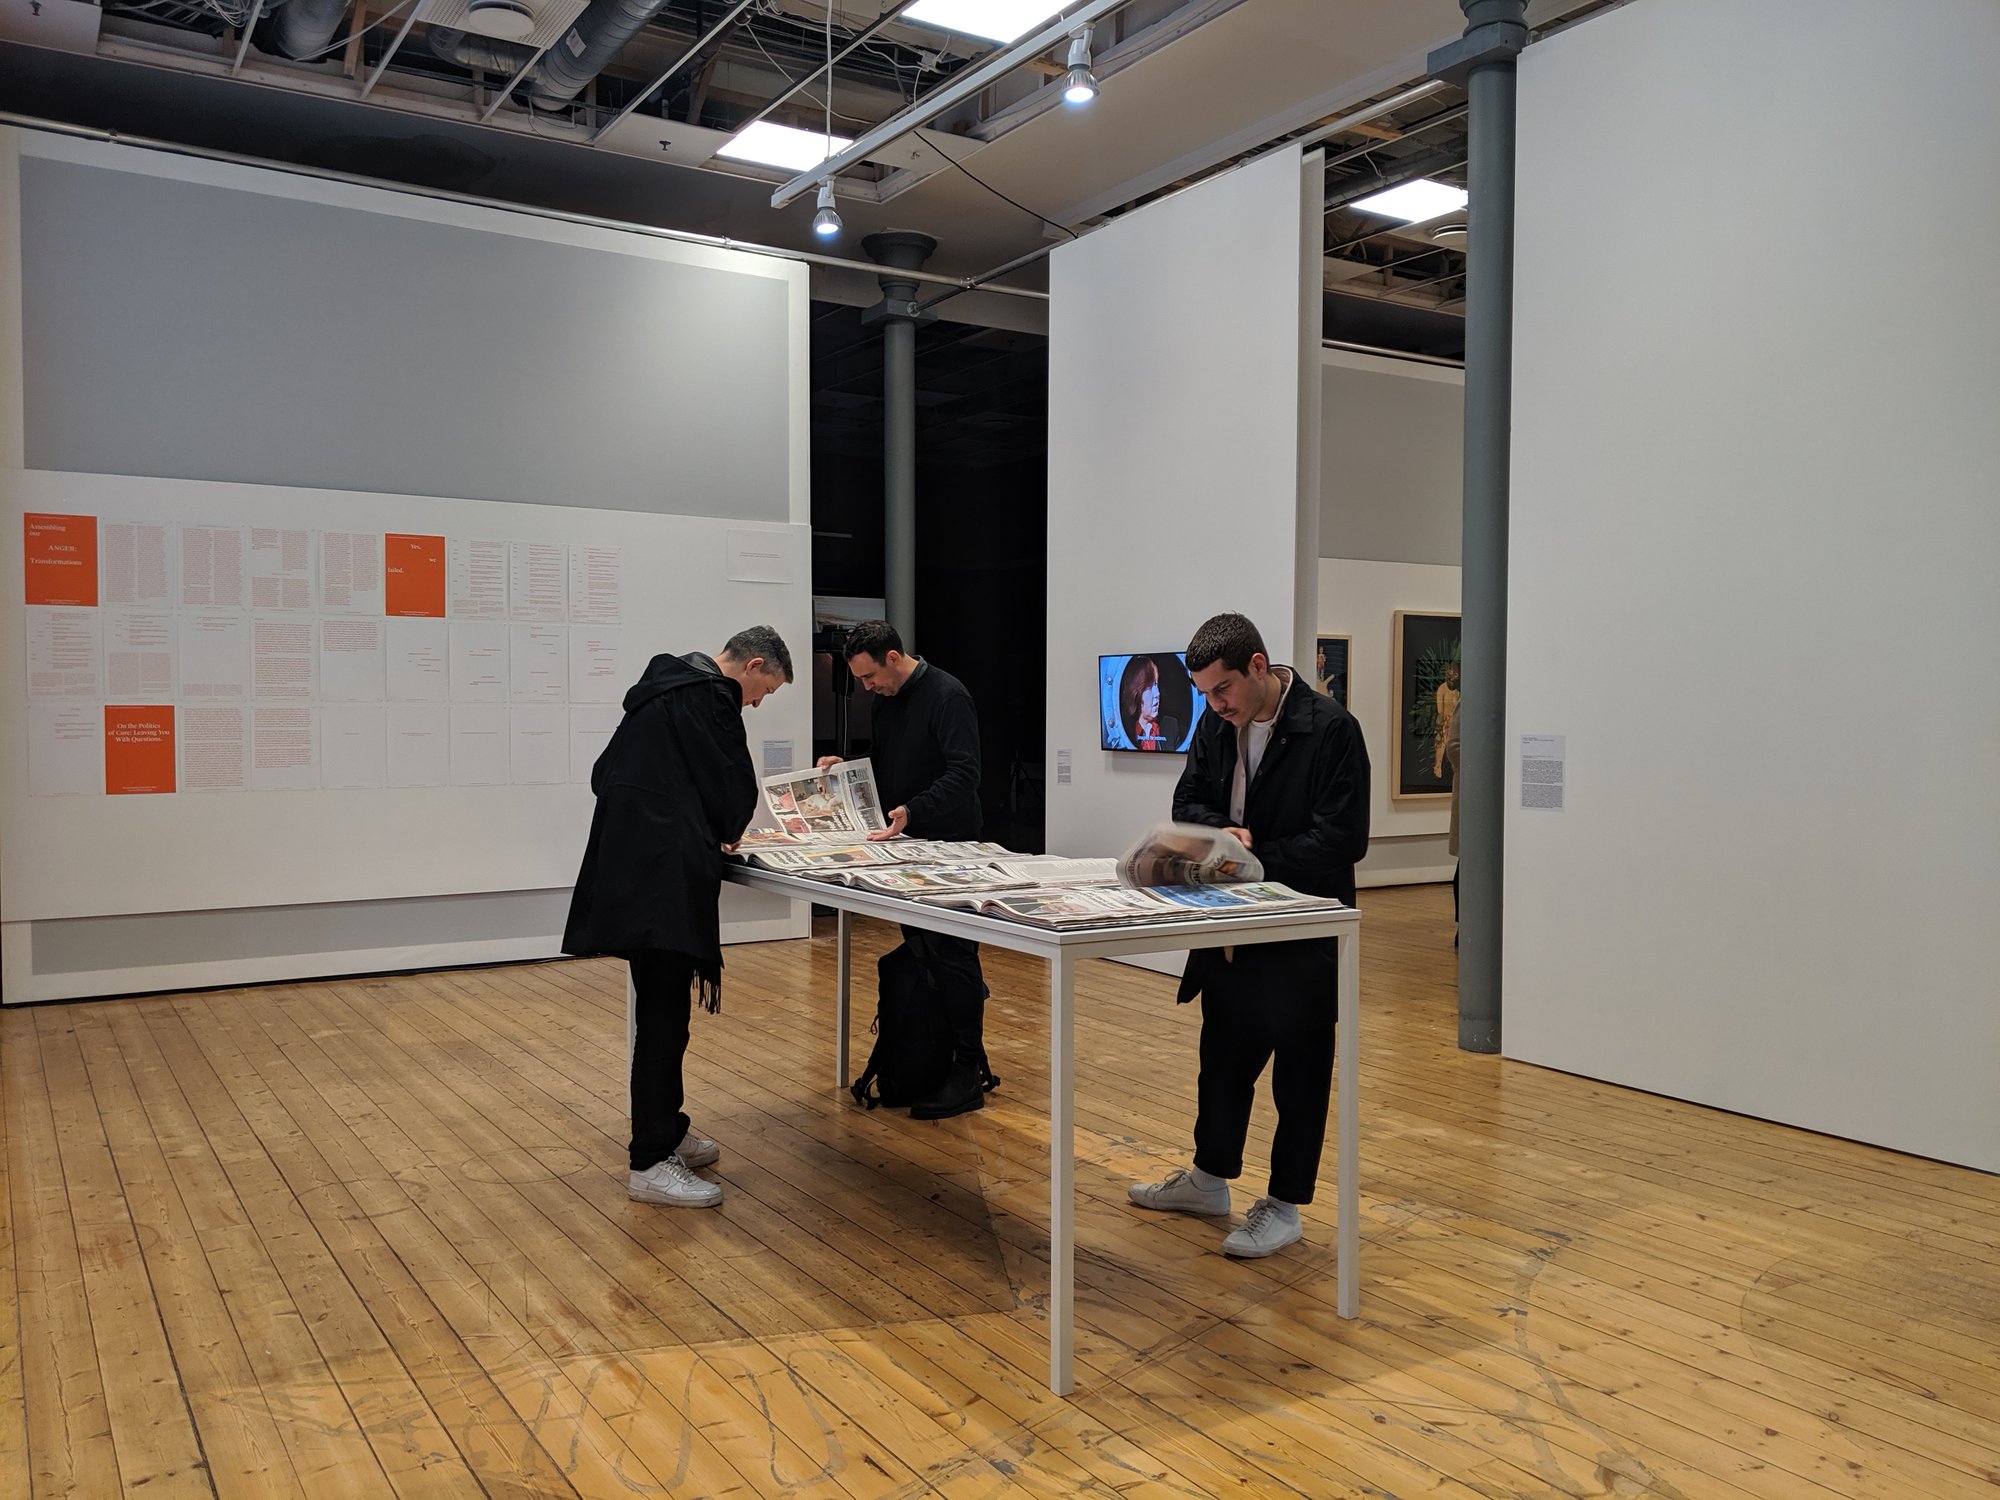 Banu Cennetoğlu, Installation view, Bergen Assembly 2019, Bergen, 2019